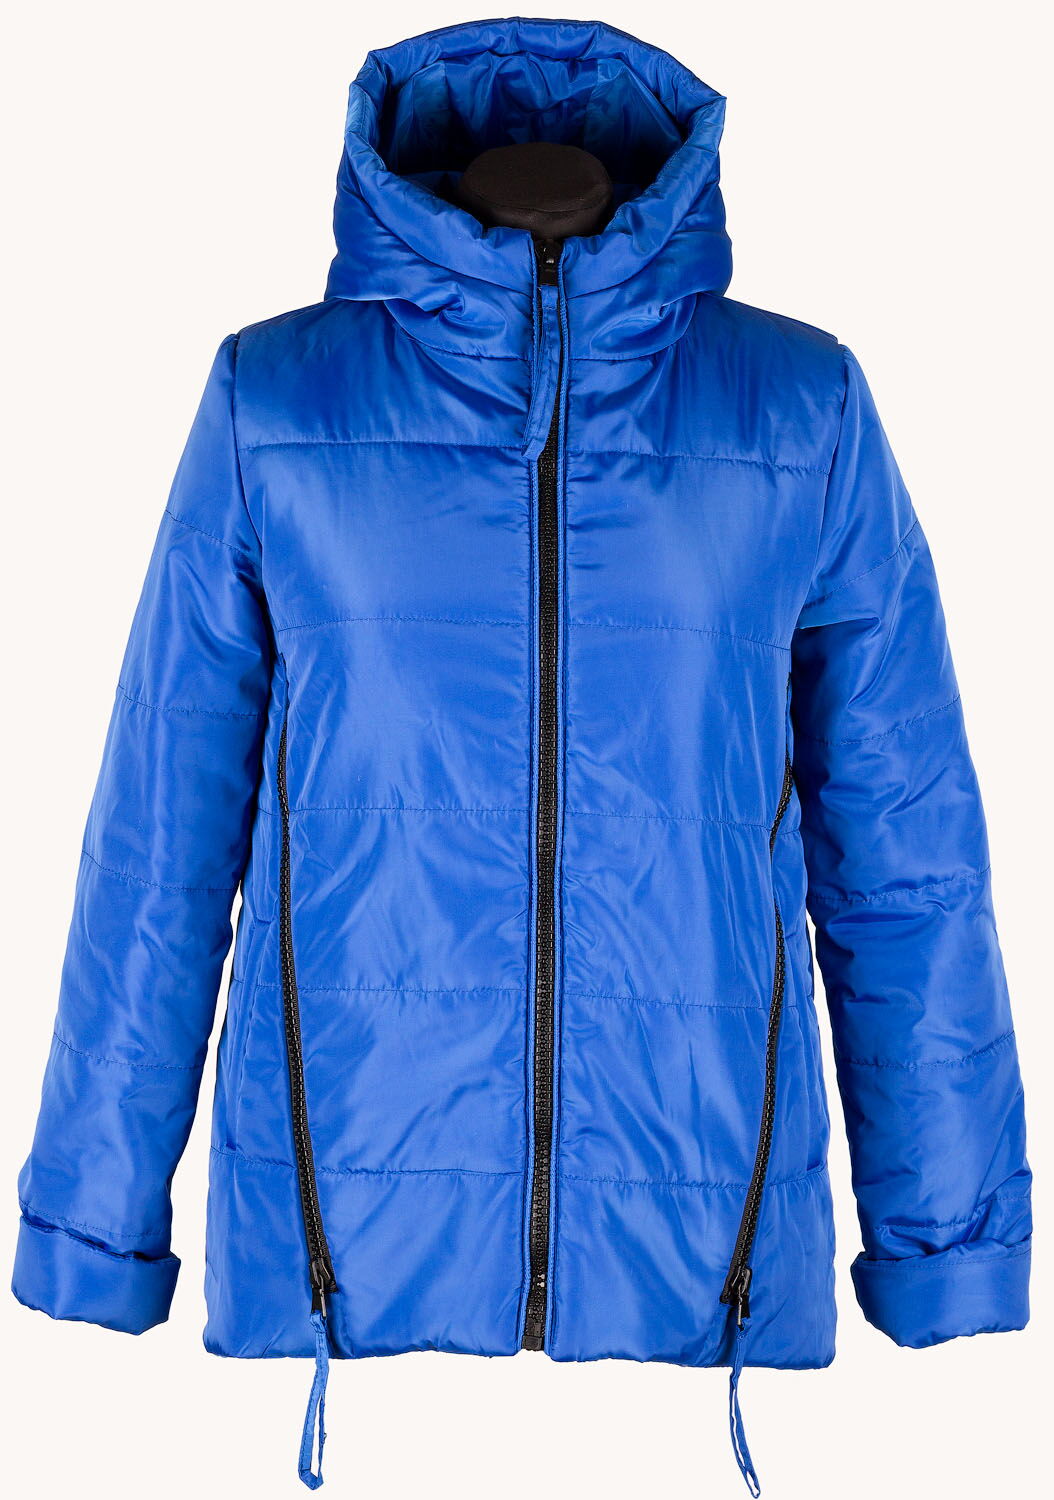 Куртка для девочки ОДЯГАЙКО синяя 25002 - размеры